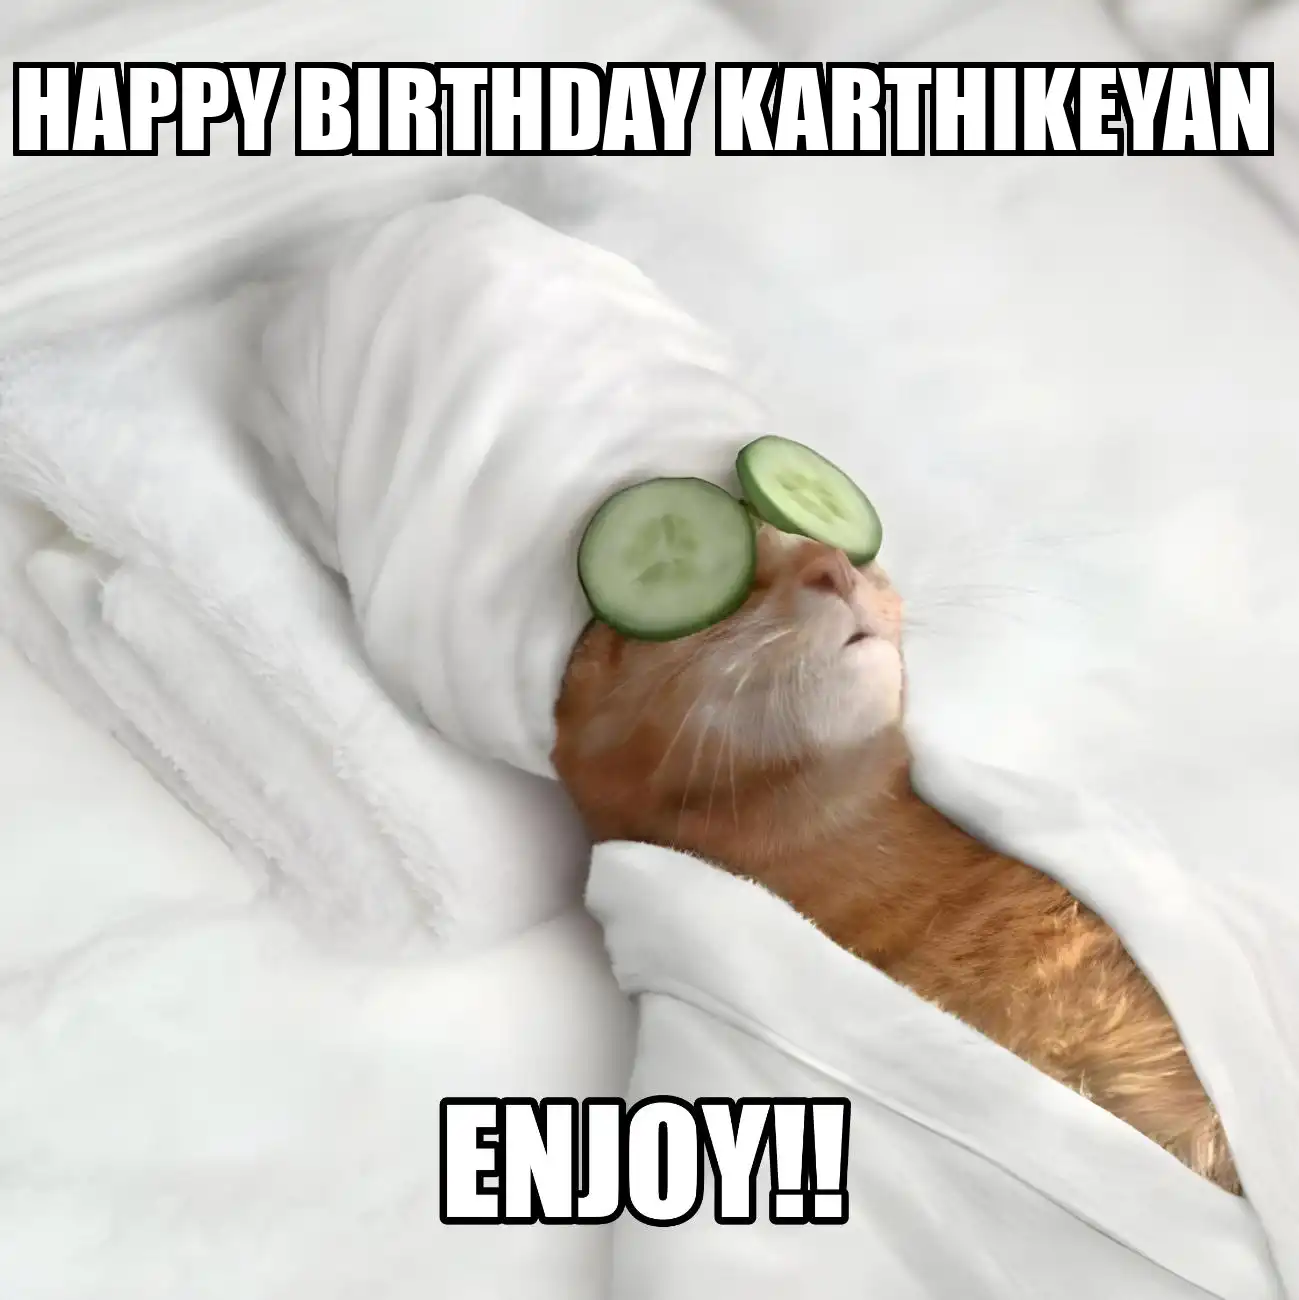 Happy Birthday Karthikeyan Enjoy Cat Meme